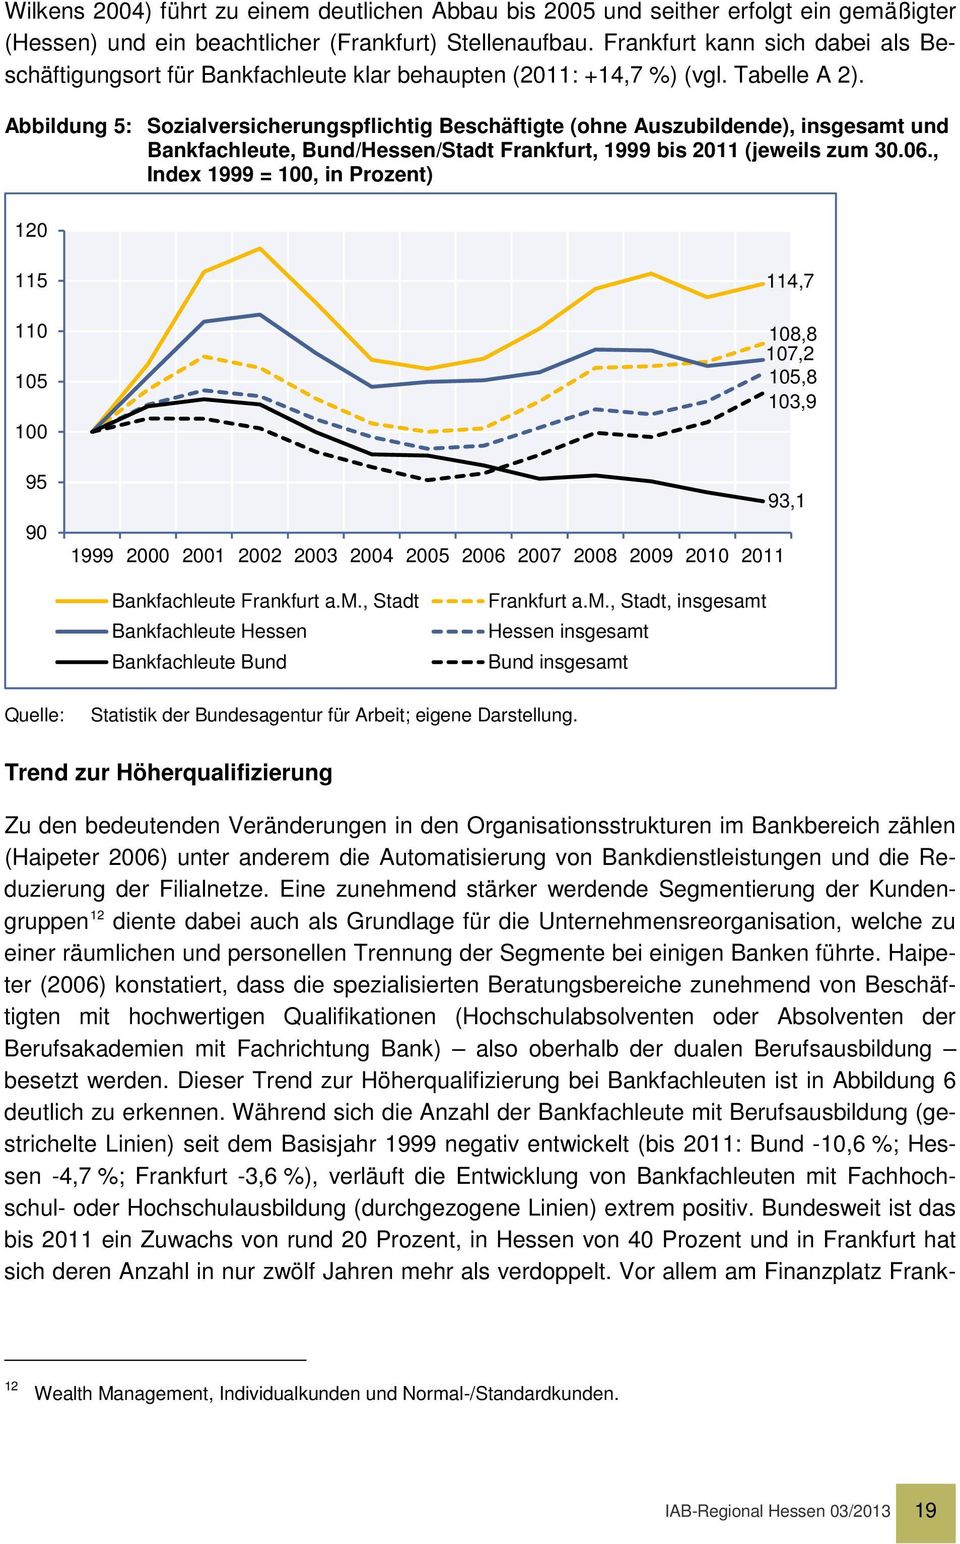 Abbildung 5: Sozialversicherungspflichtig Beschäftigte (ohne Auszubildende), insgesamt und Bankfachleute, Bund/Hessen/Stadt Frankfurt, 1999 bis 2011 (jeweils zum 30.06.